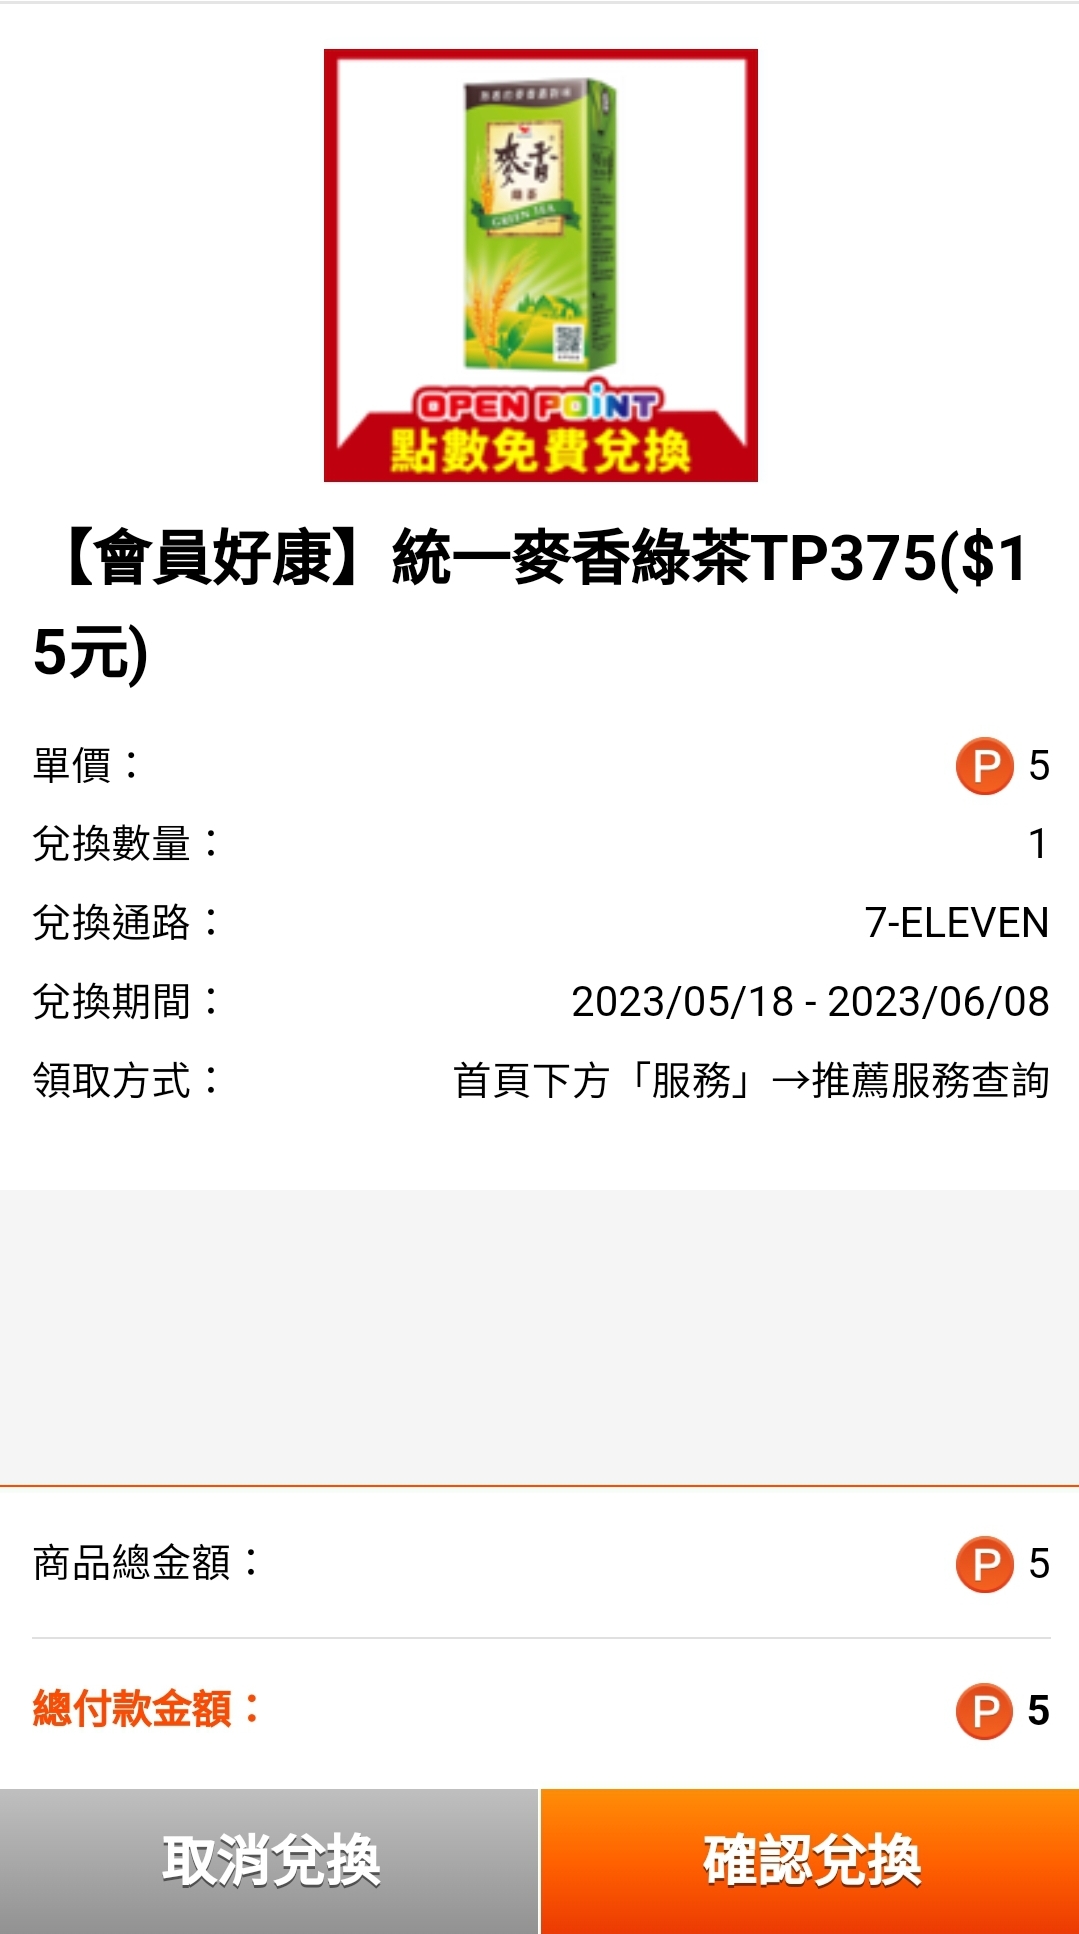 [情報] 711 5P換麥香綠茶 大精美買2送2